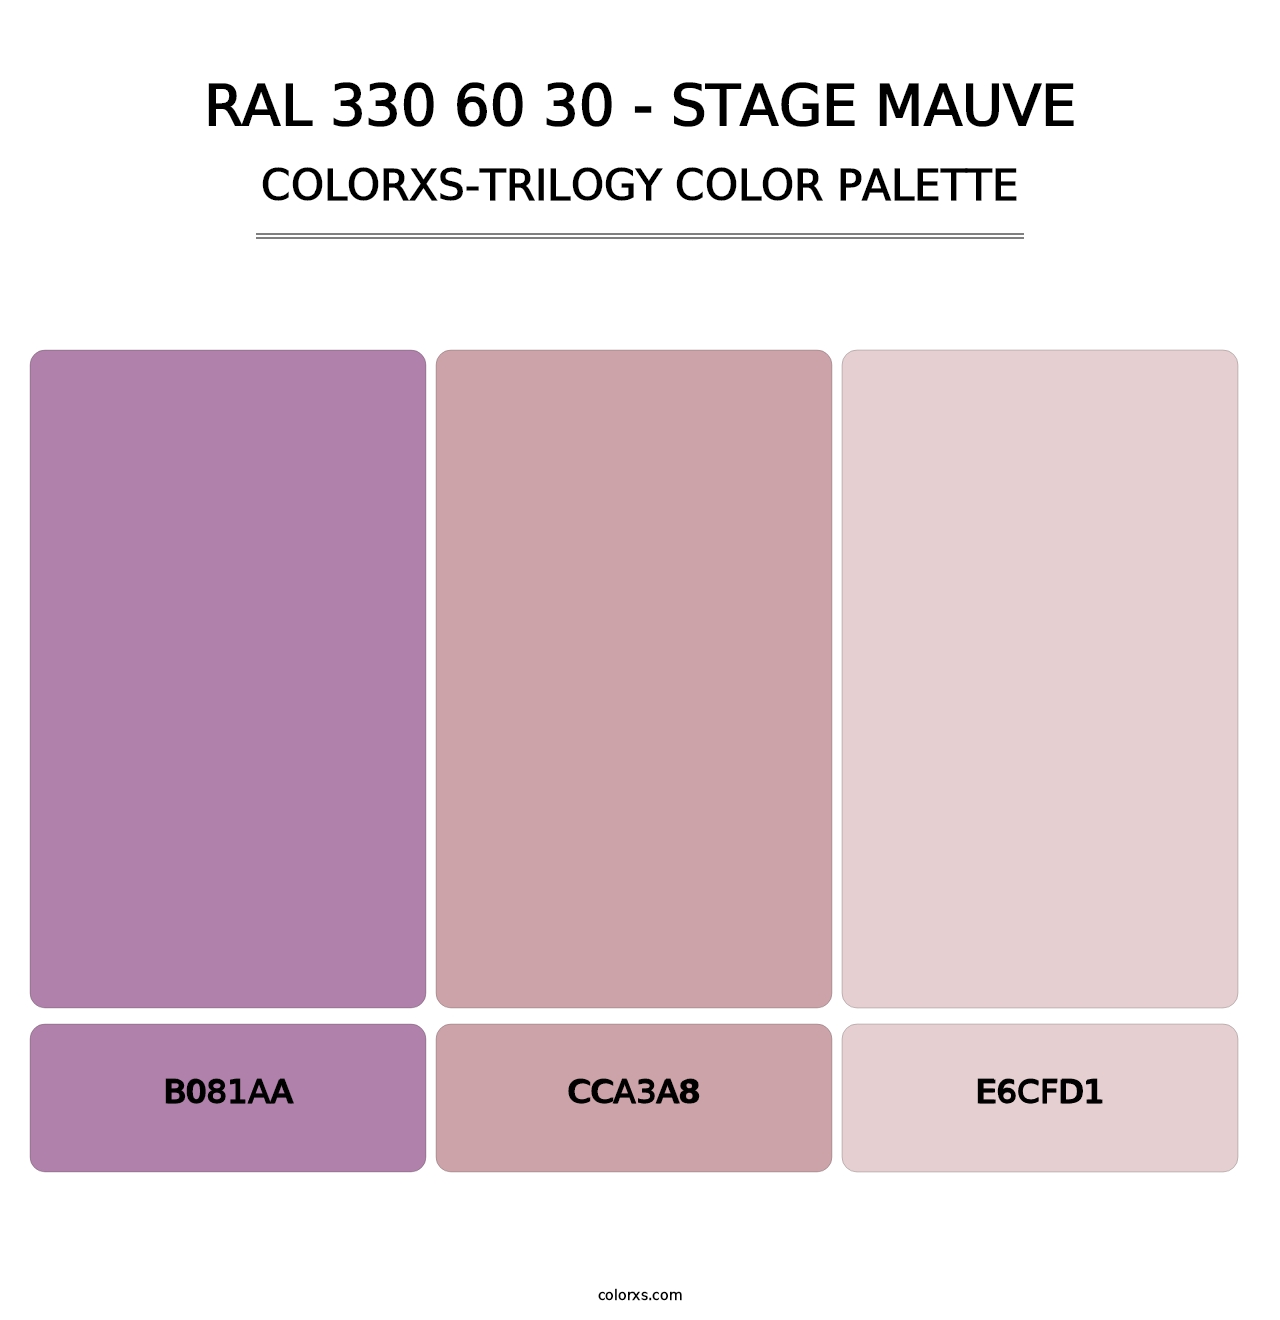 RAL 330 60 30 - Stage Mauve - Colorxs Trilogy Palette